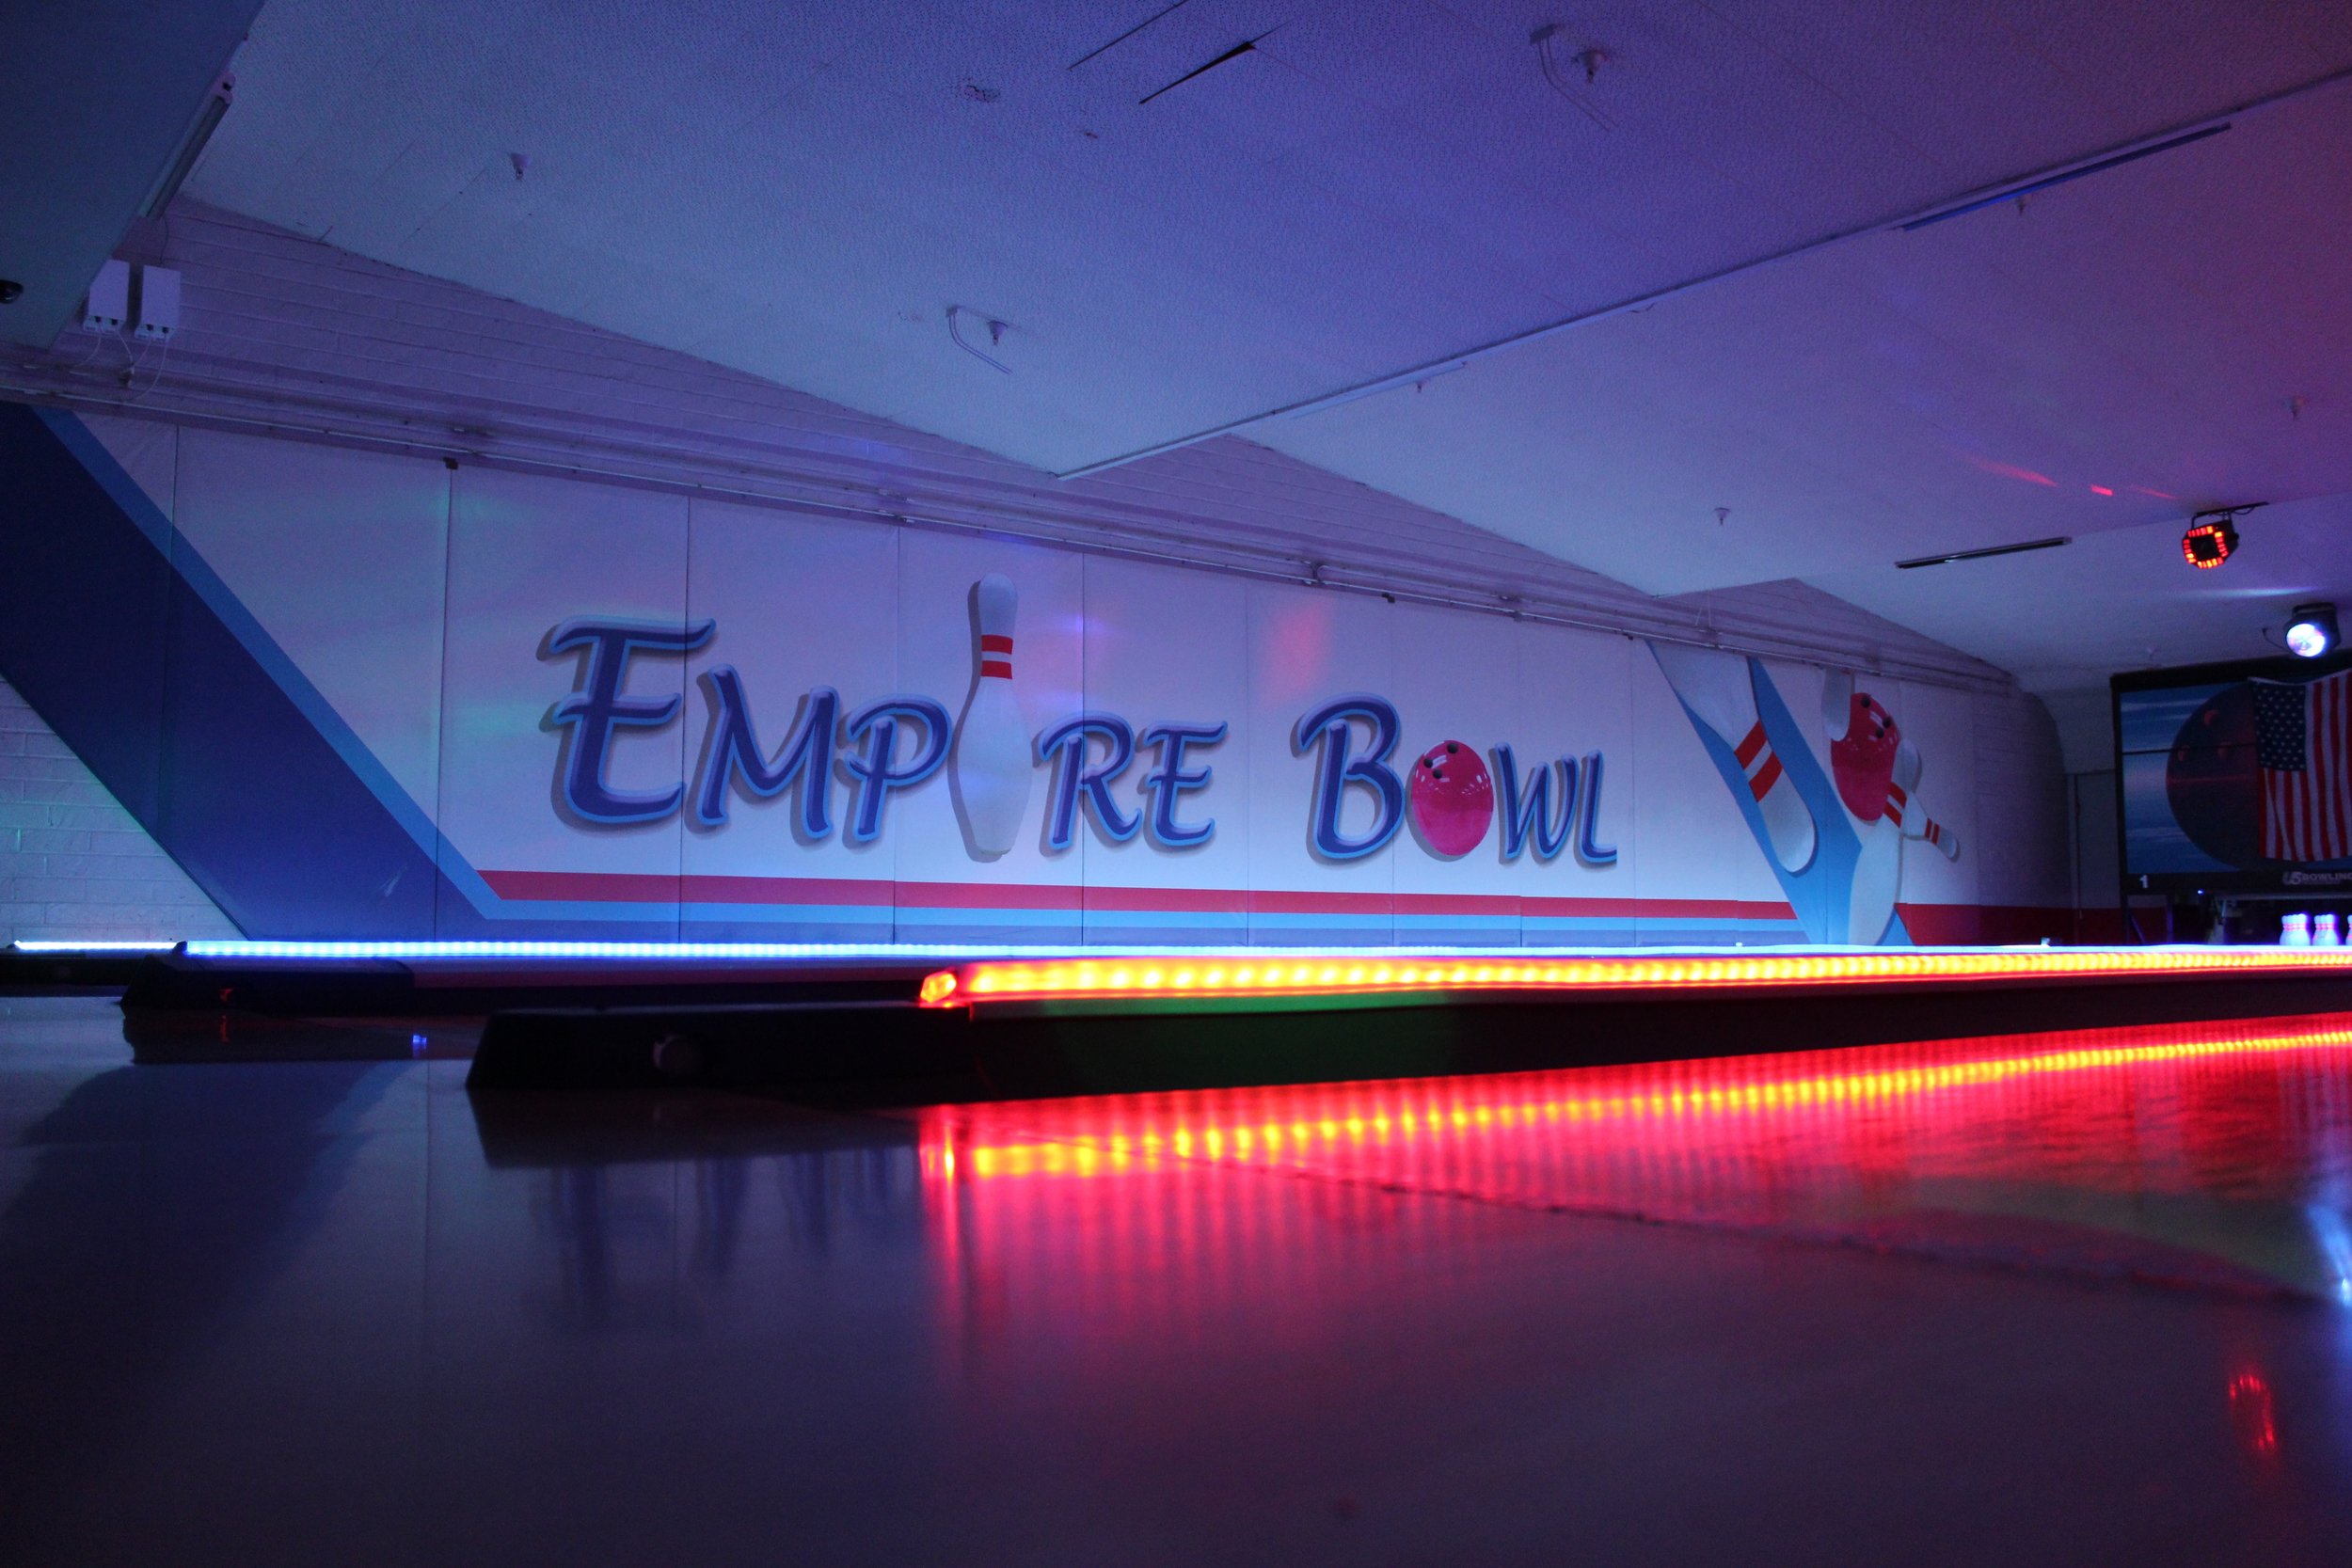 Contact — Empire Bowl